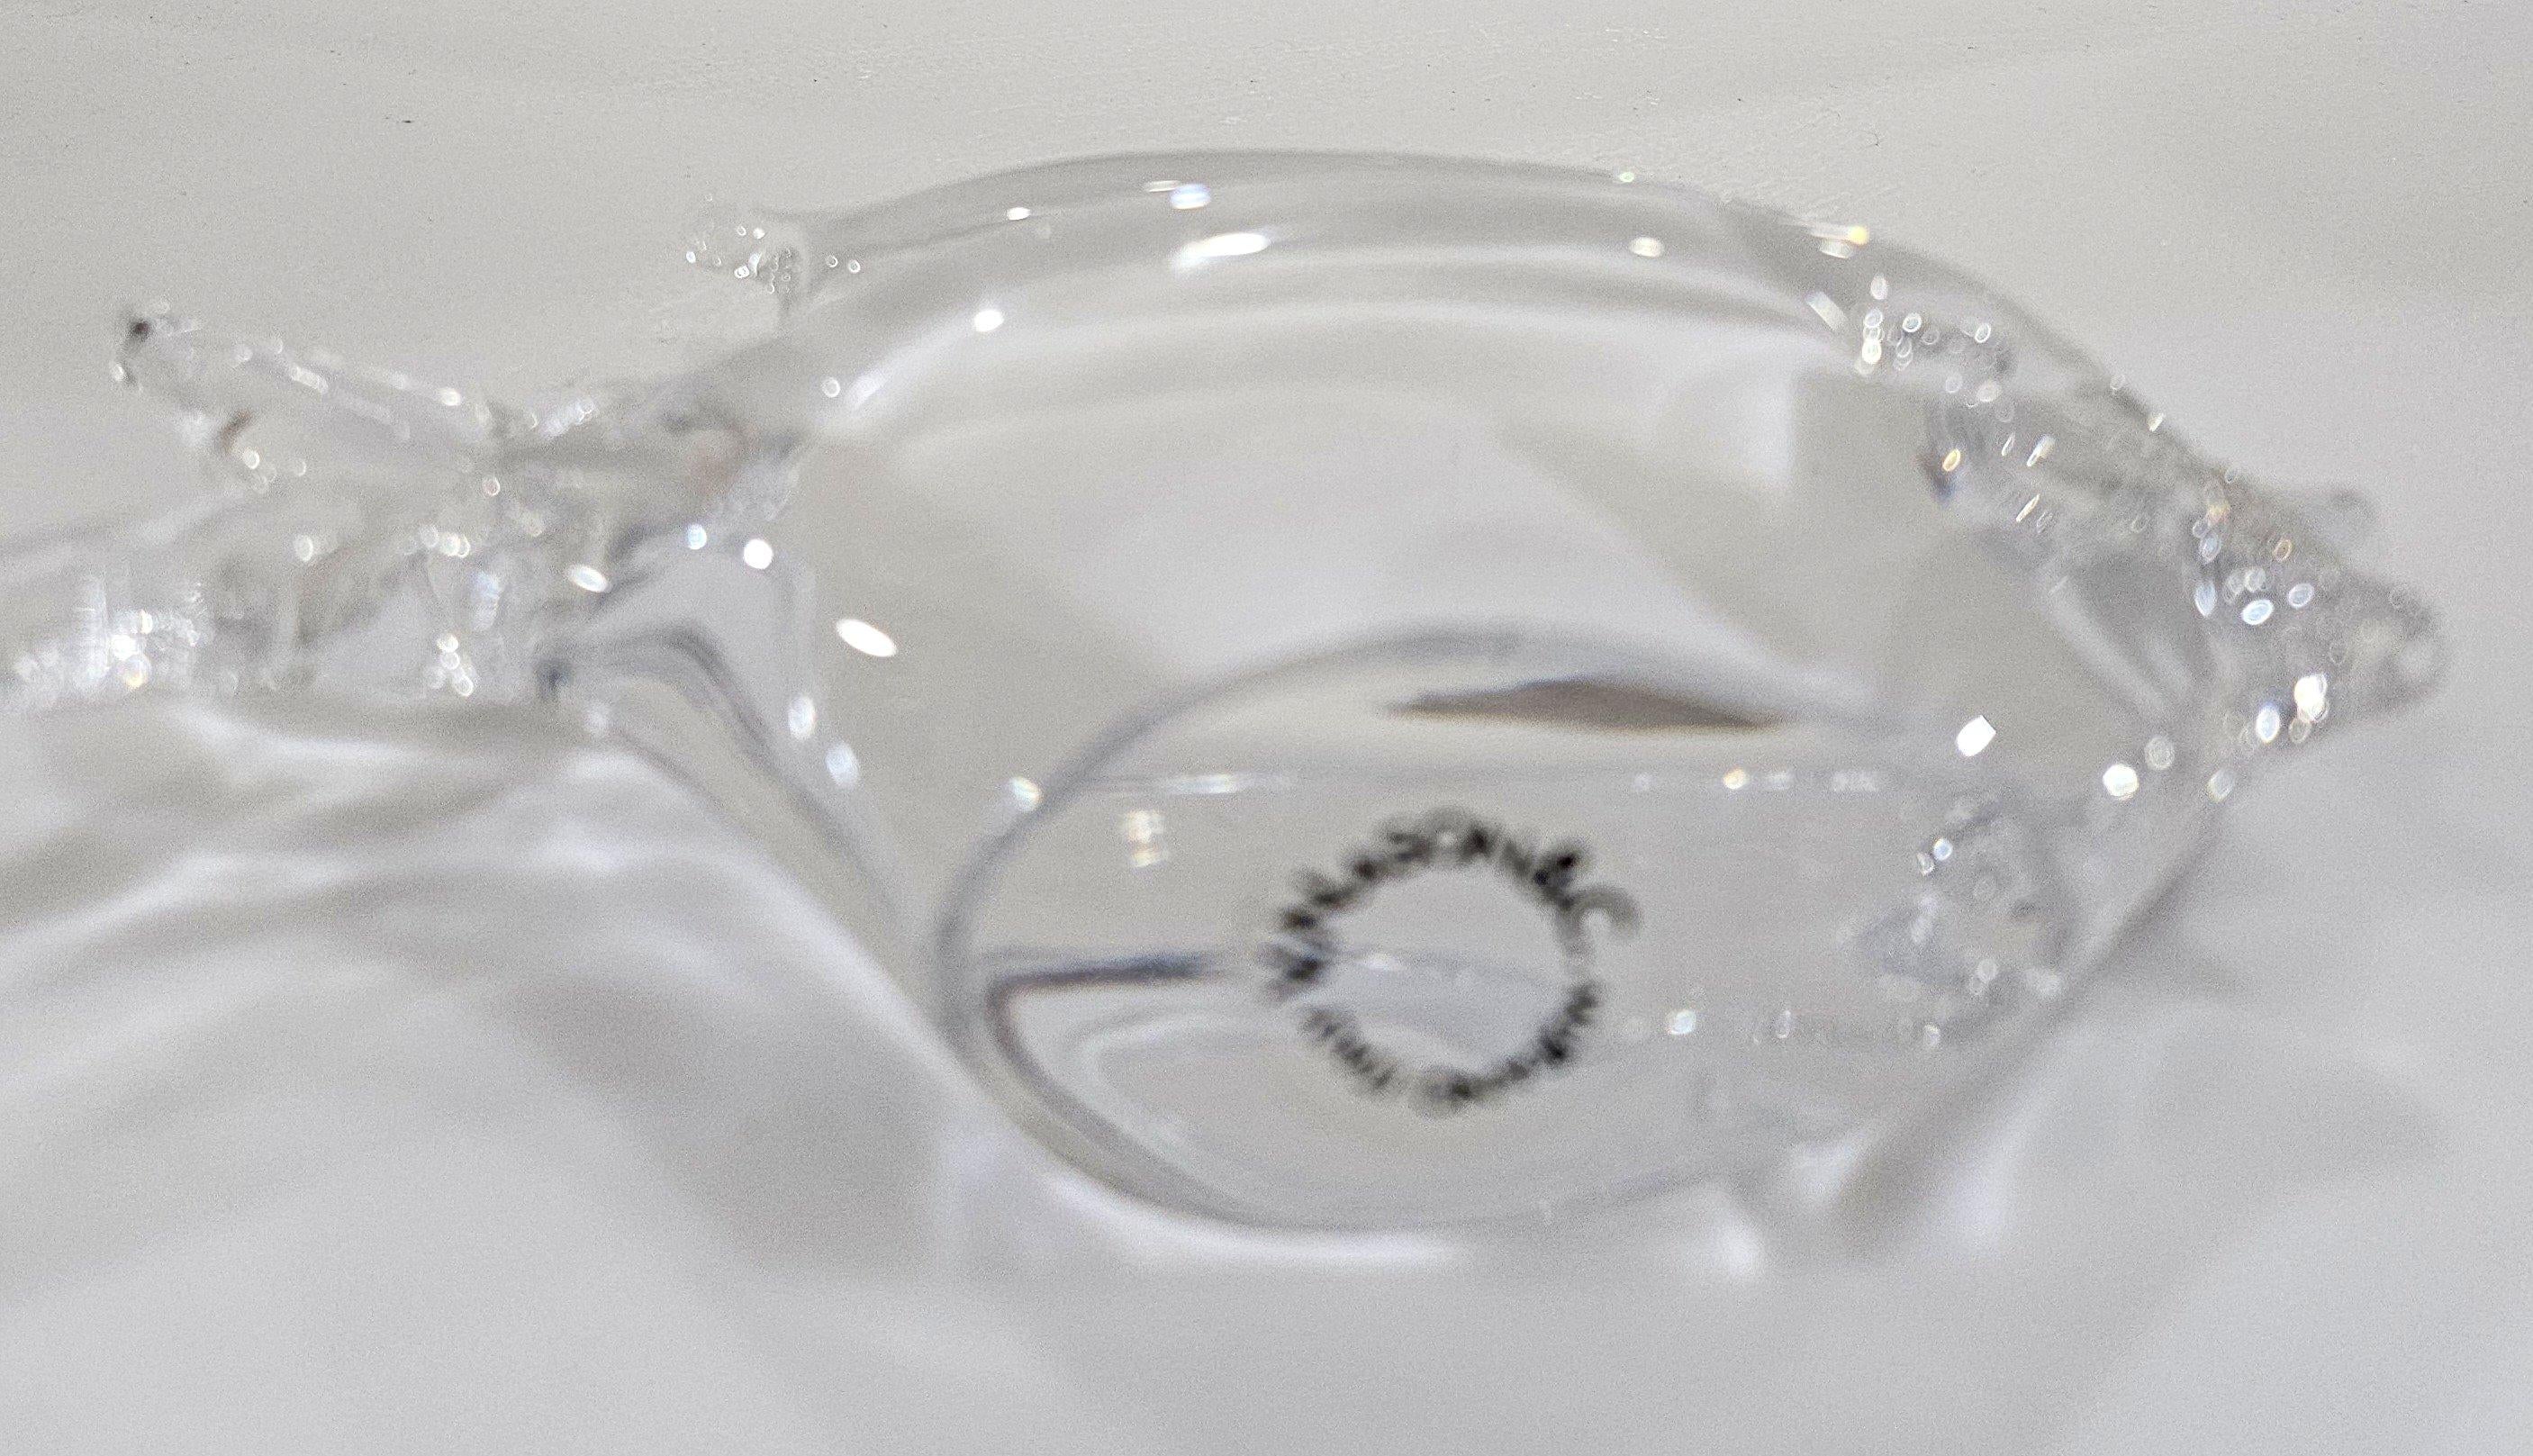 Poisson vintage en verre de Murano par V.I.I., Italie. Labellisé ainsi.
Très bel état vintage avec l'étiquette d'origine.
Apx 5.5 x 4 x 1.5 pouces.
Les bulles accidentelles font partie intégrante du verre soufflé à la bouche.


Les mesures sont